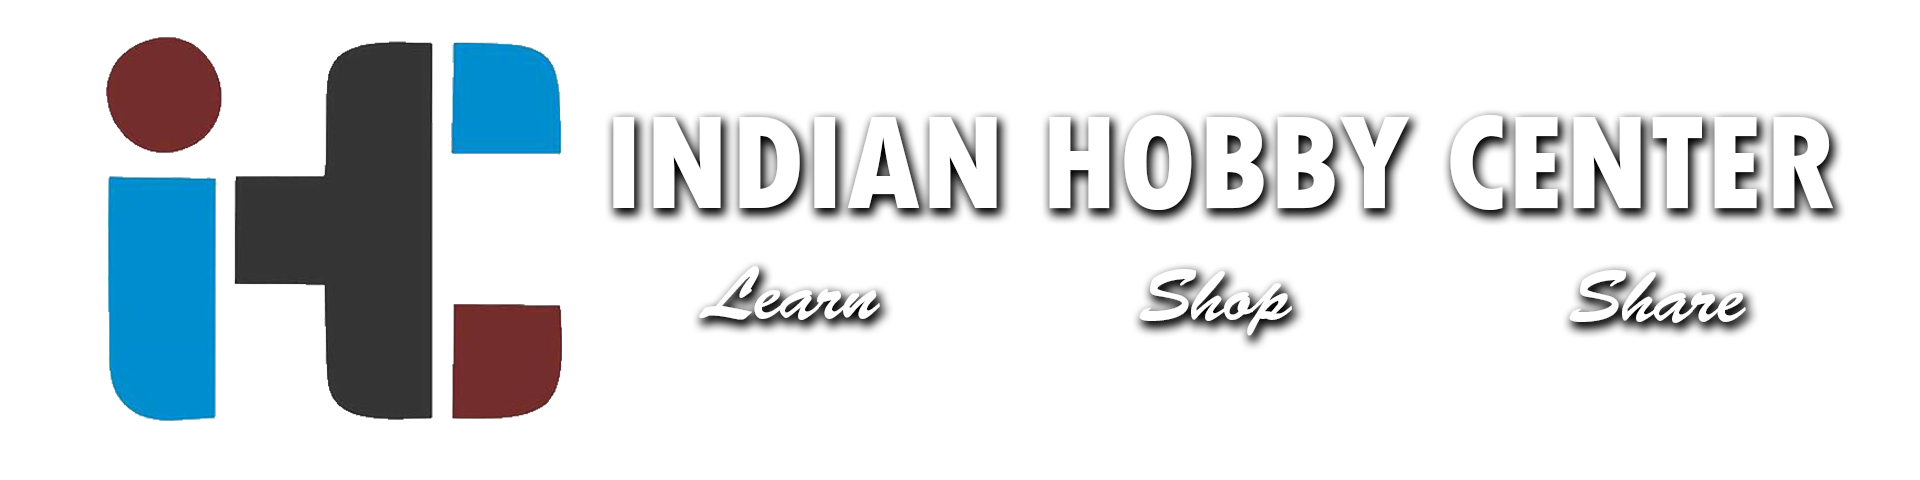 Indian Hobby Center